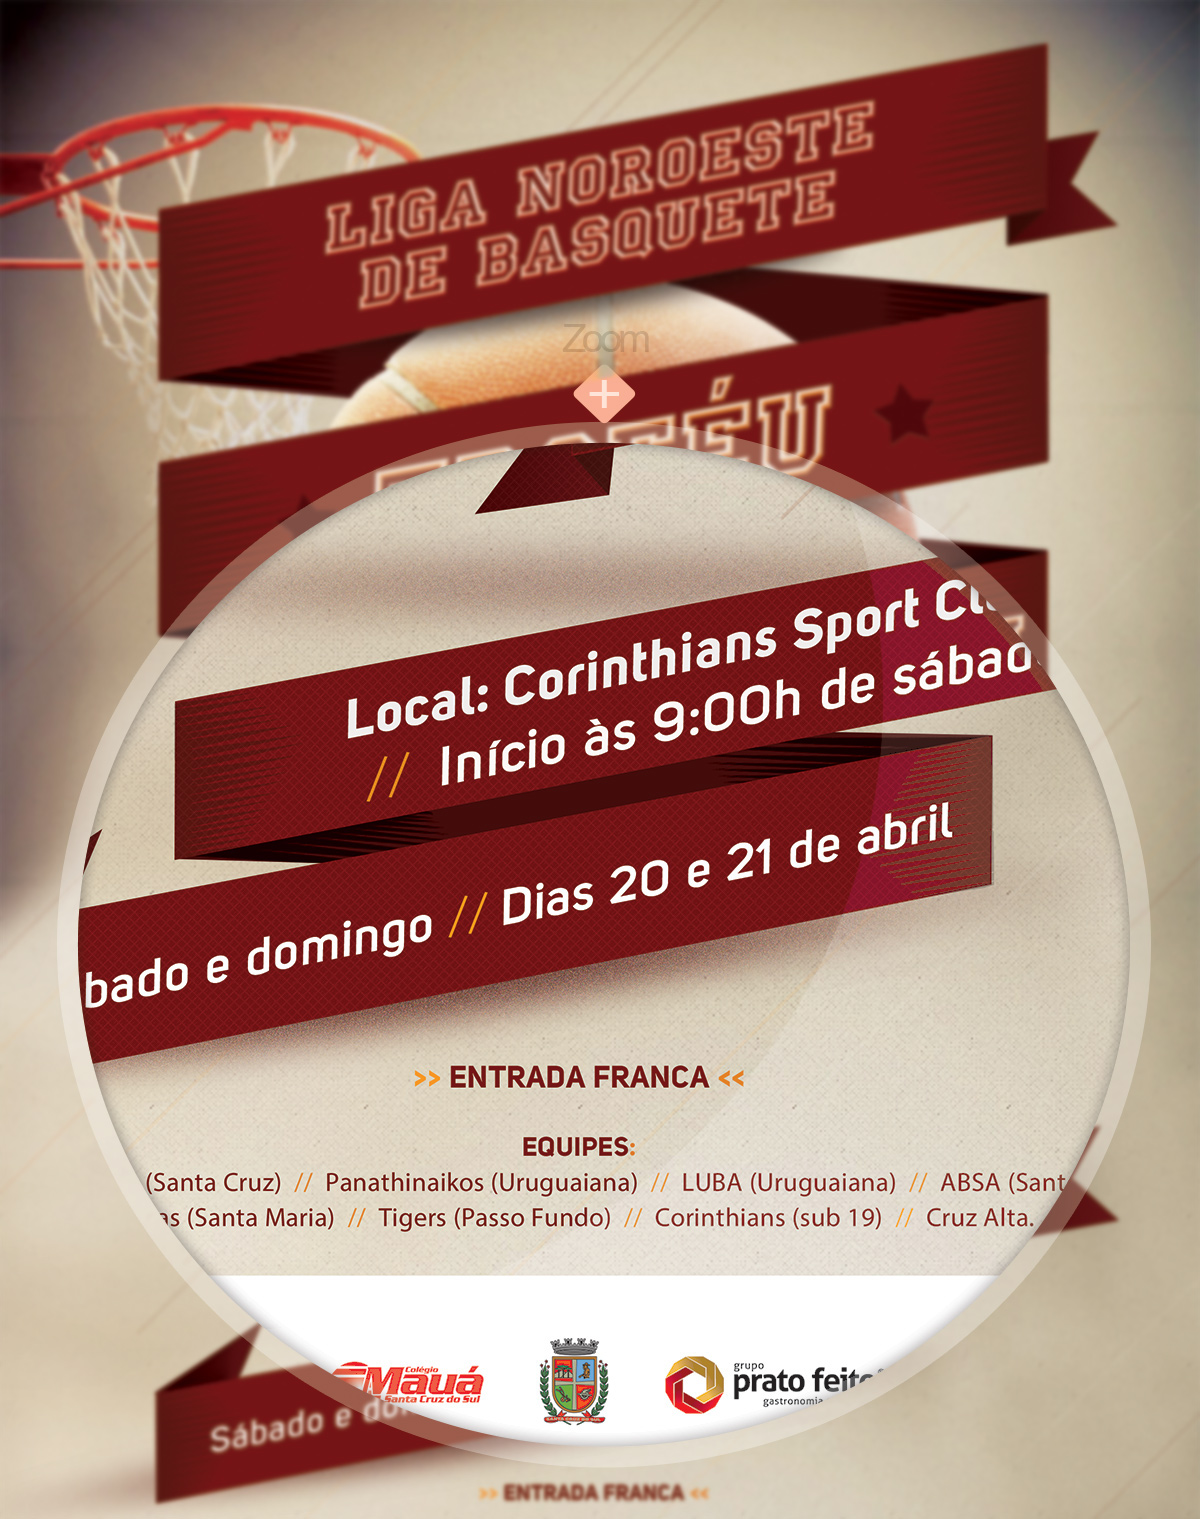 graphicdesign newspaper ad basket flyer cartaz mobile trophy Medal Medalha manipulation